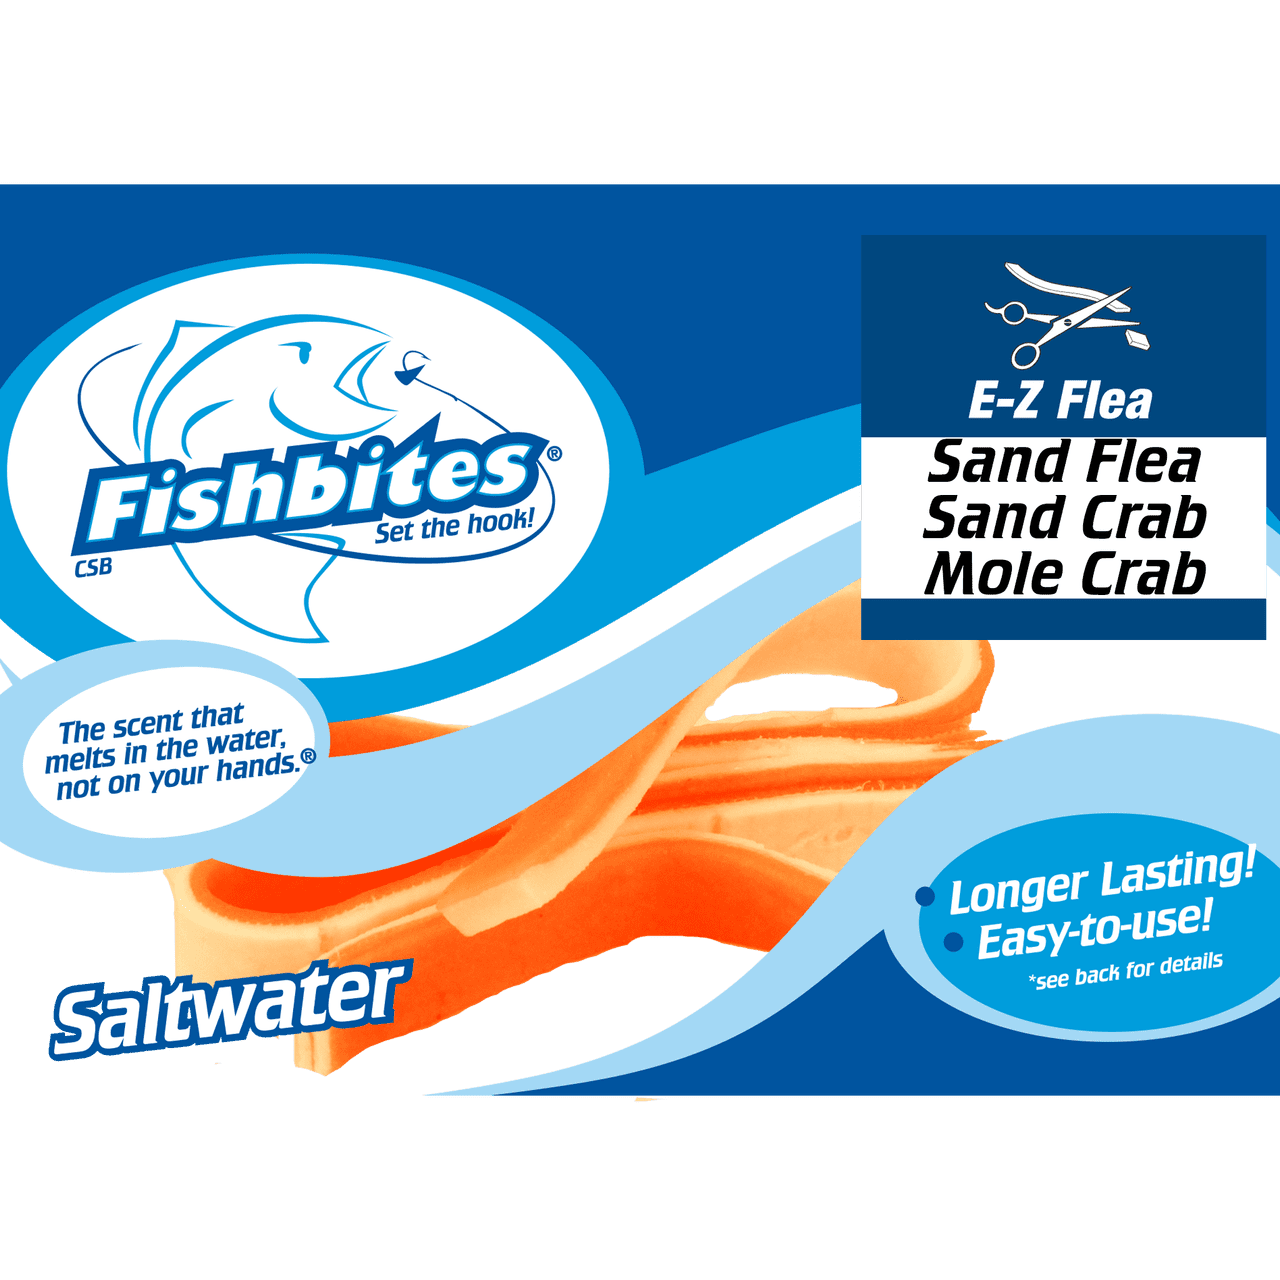 Fishbites 0100 E-Z sable FLEA ORANGE BLANC 22587 